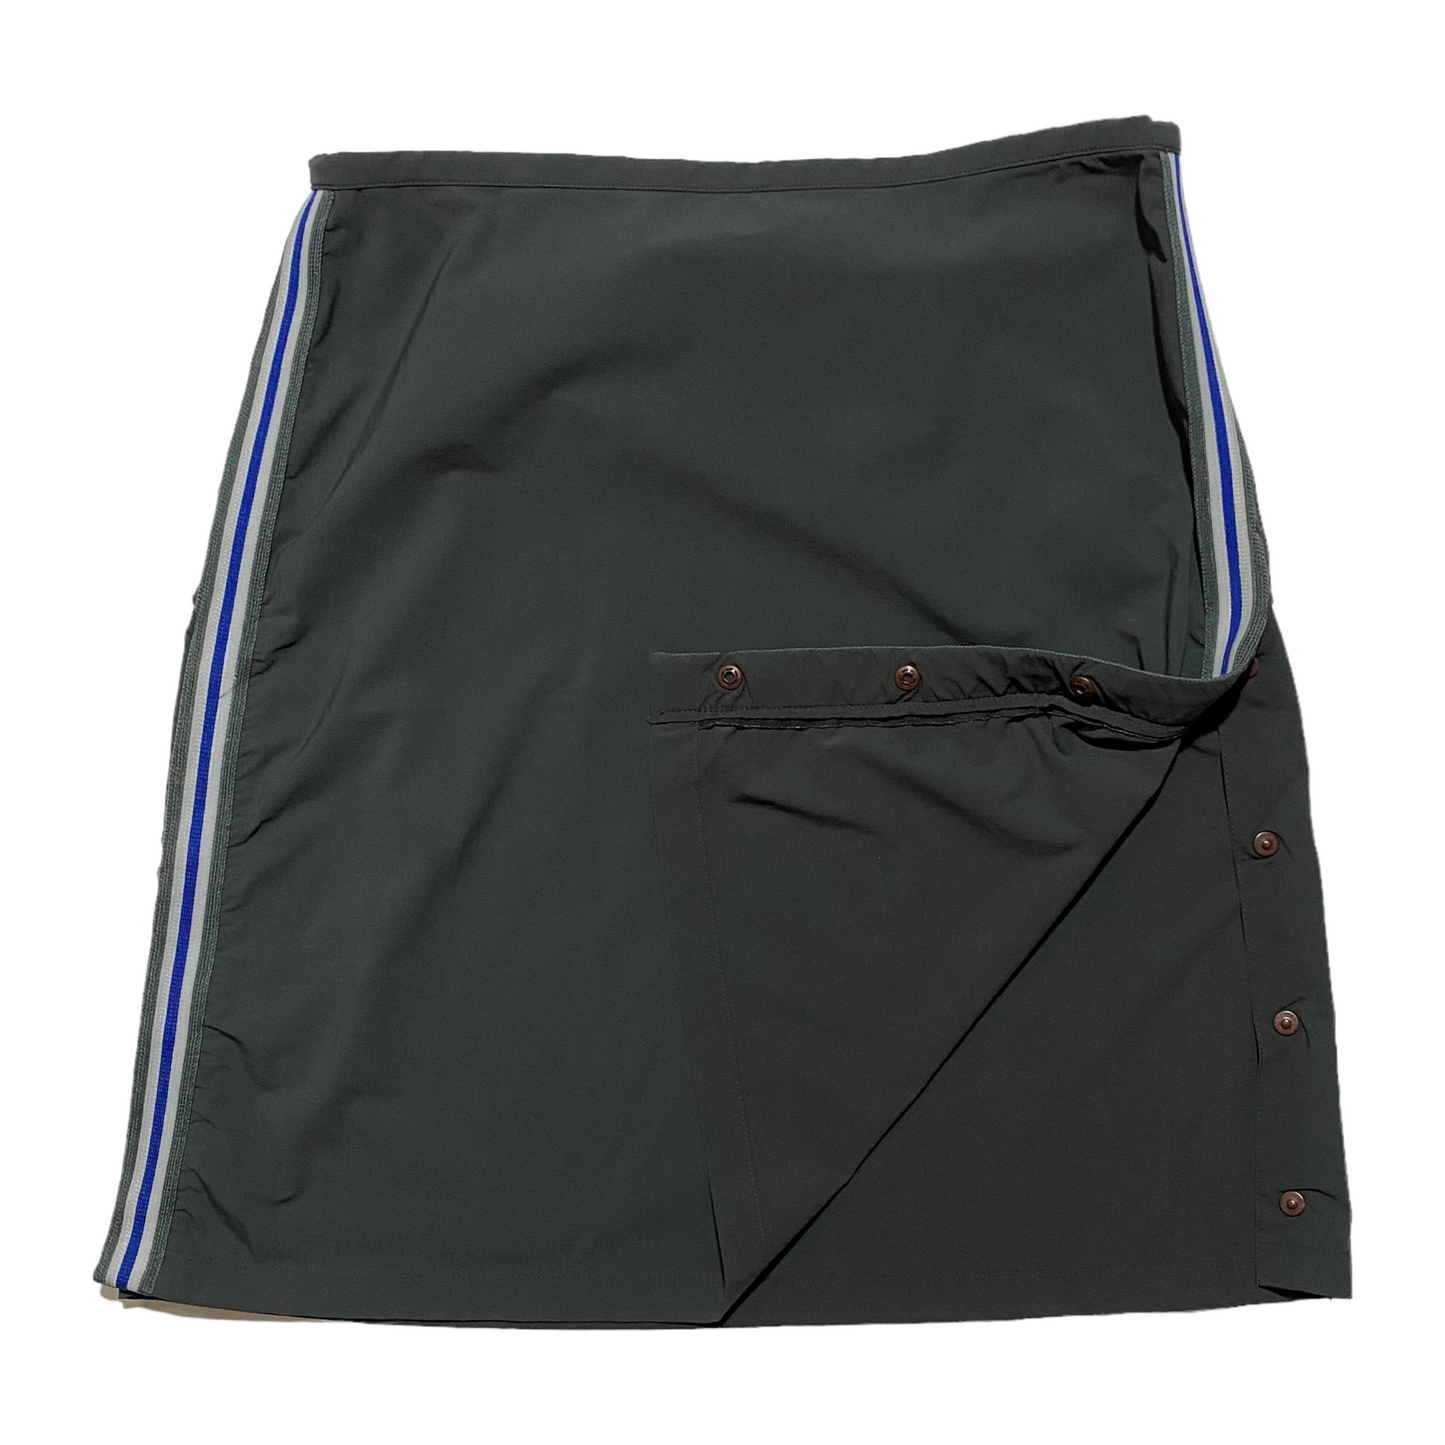 S/S 2000 Prada Sport Skirt (39W)